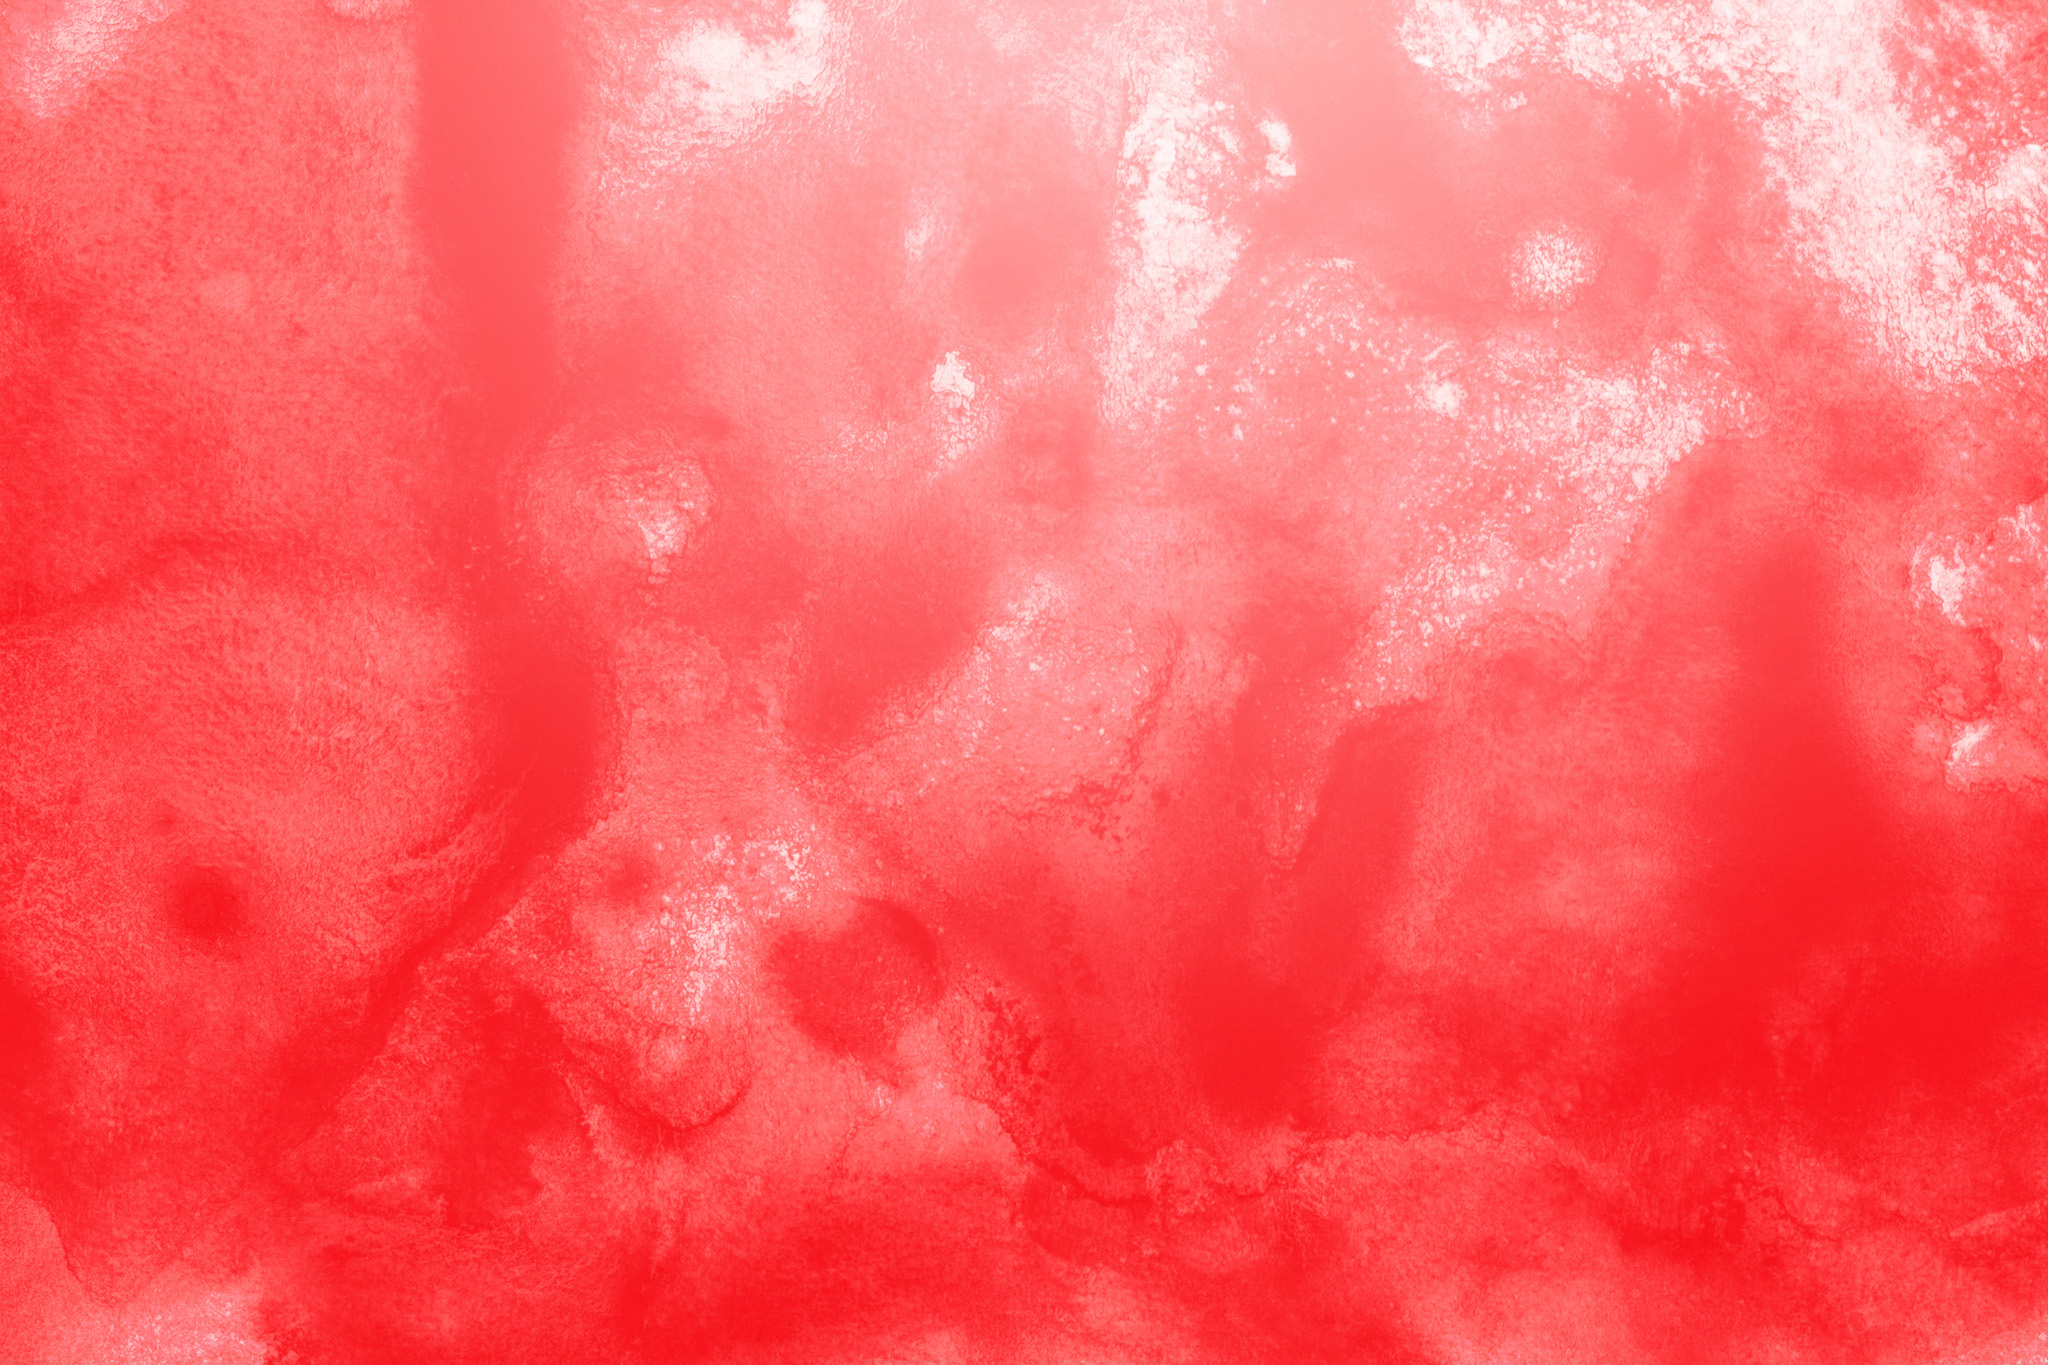 グラデーションが赤のかっこいい壁紙 の画像素材を無料ダウンロード 1 フリー素材 Beiz Images